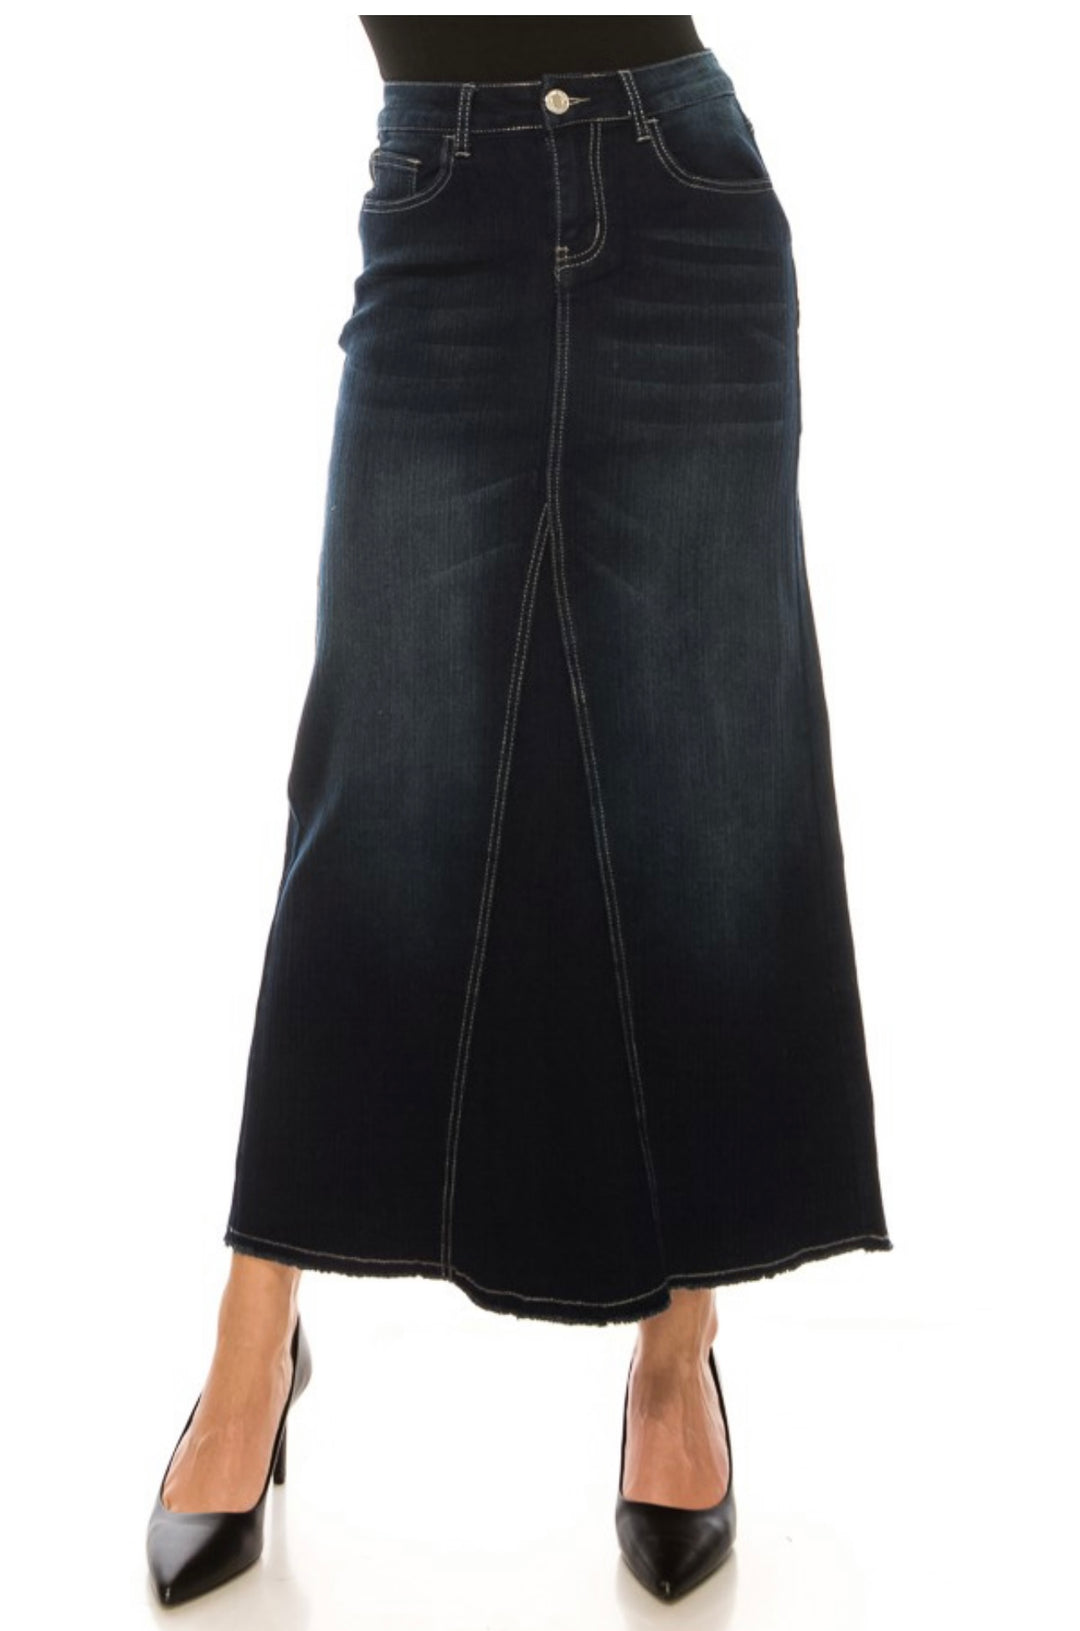 Liza's Slight Textured Triangle Cut Long Denim Skirt